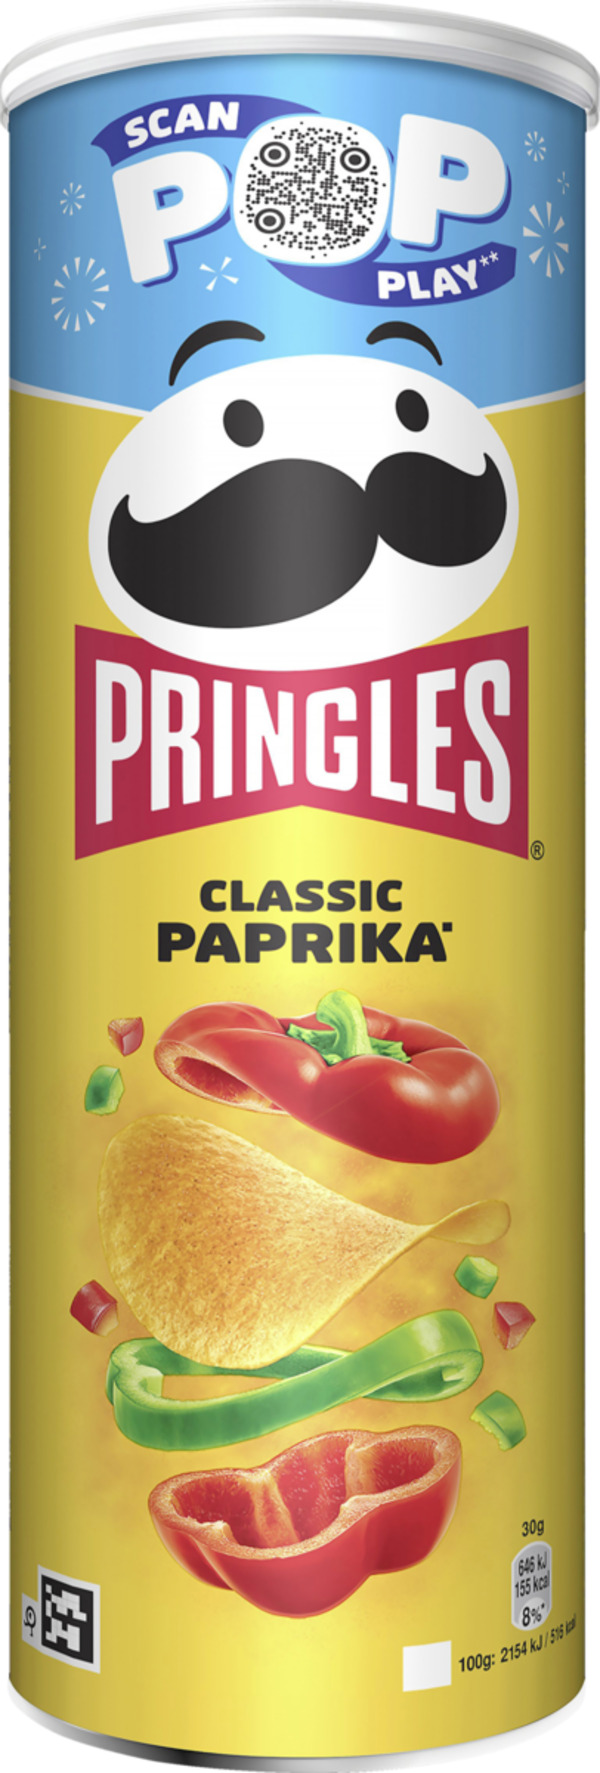 Bild 1 von Pringles Classic Paprika Chips, 165 g